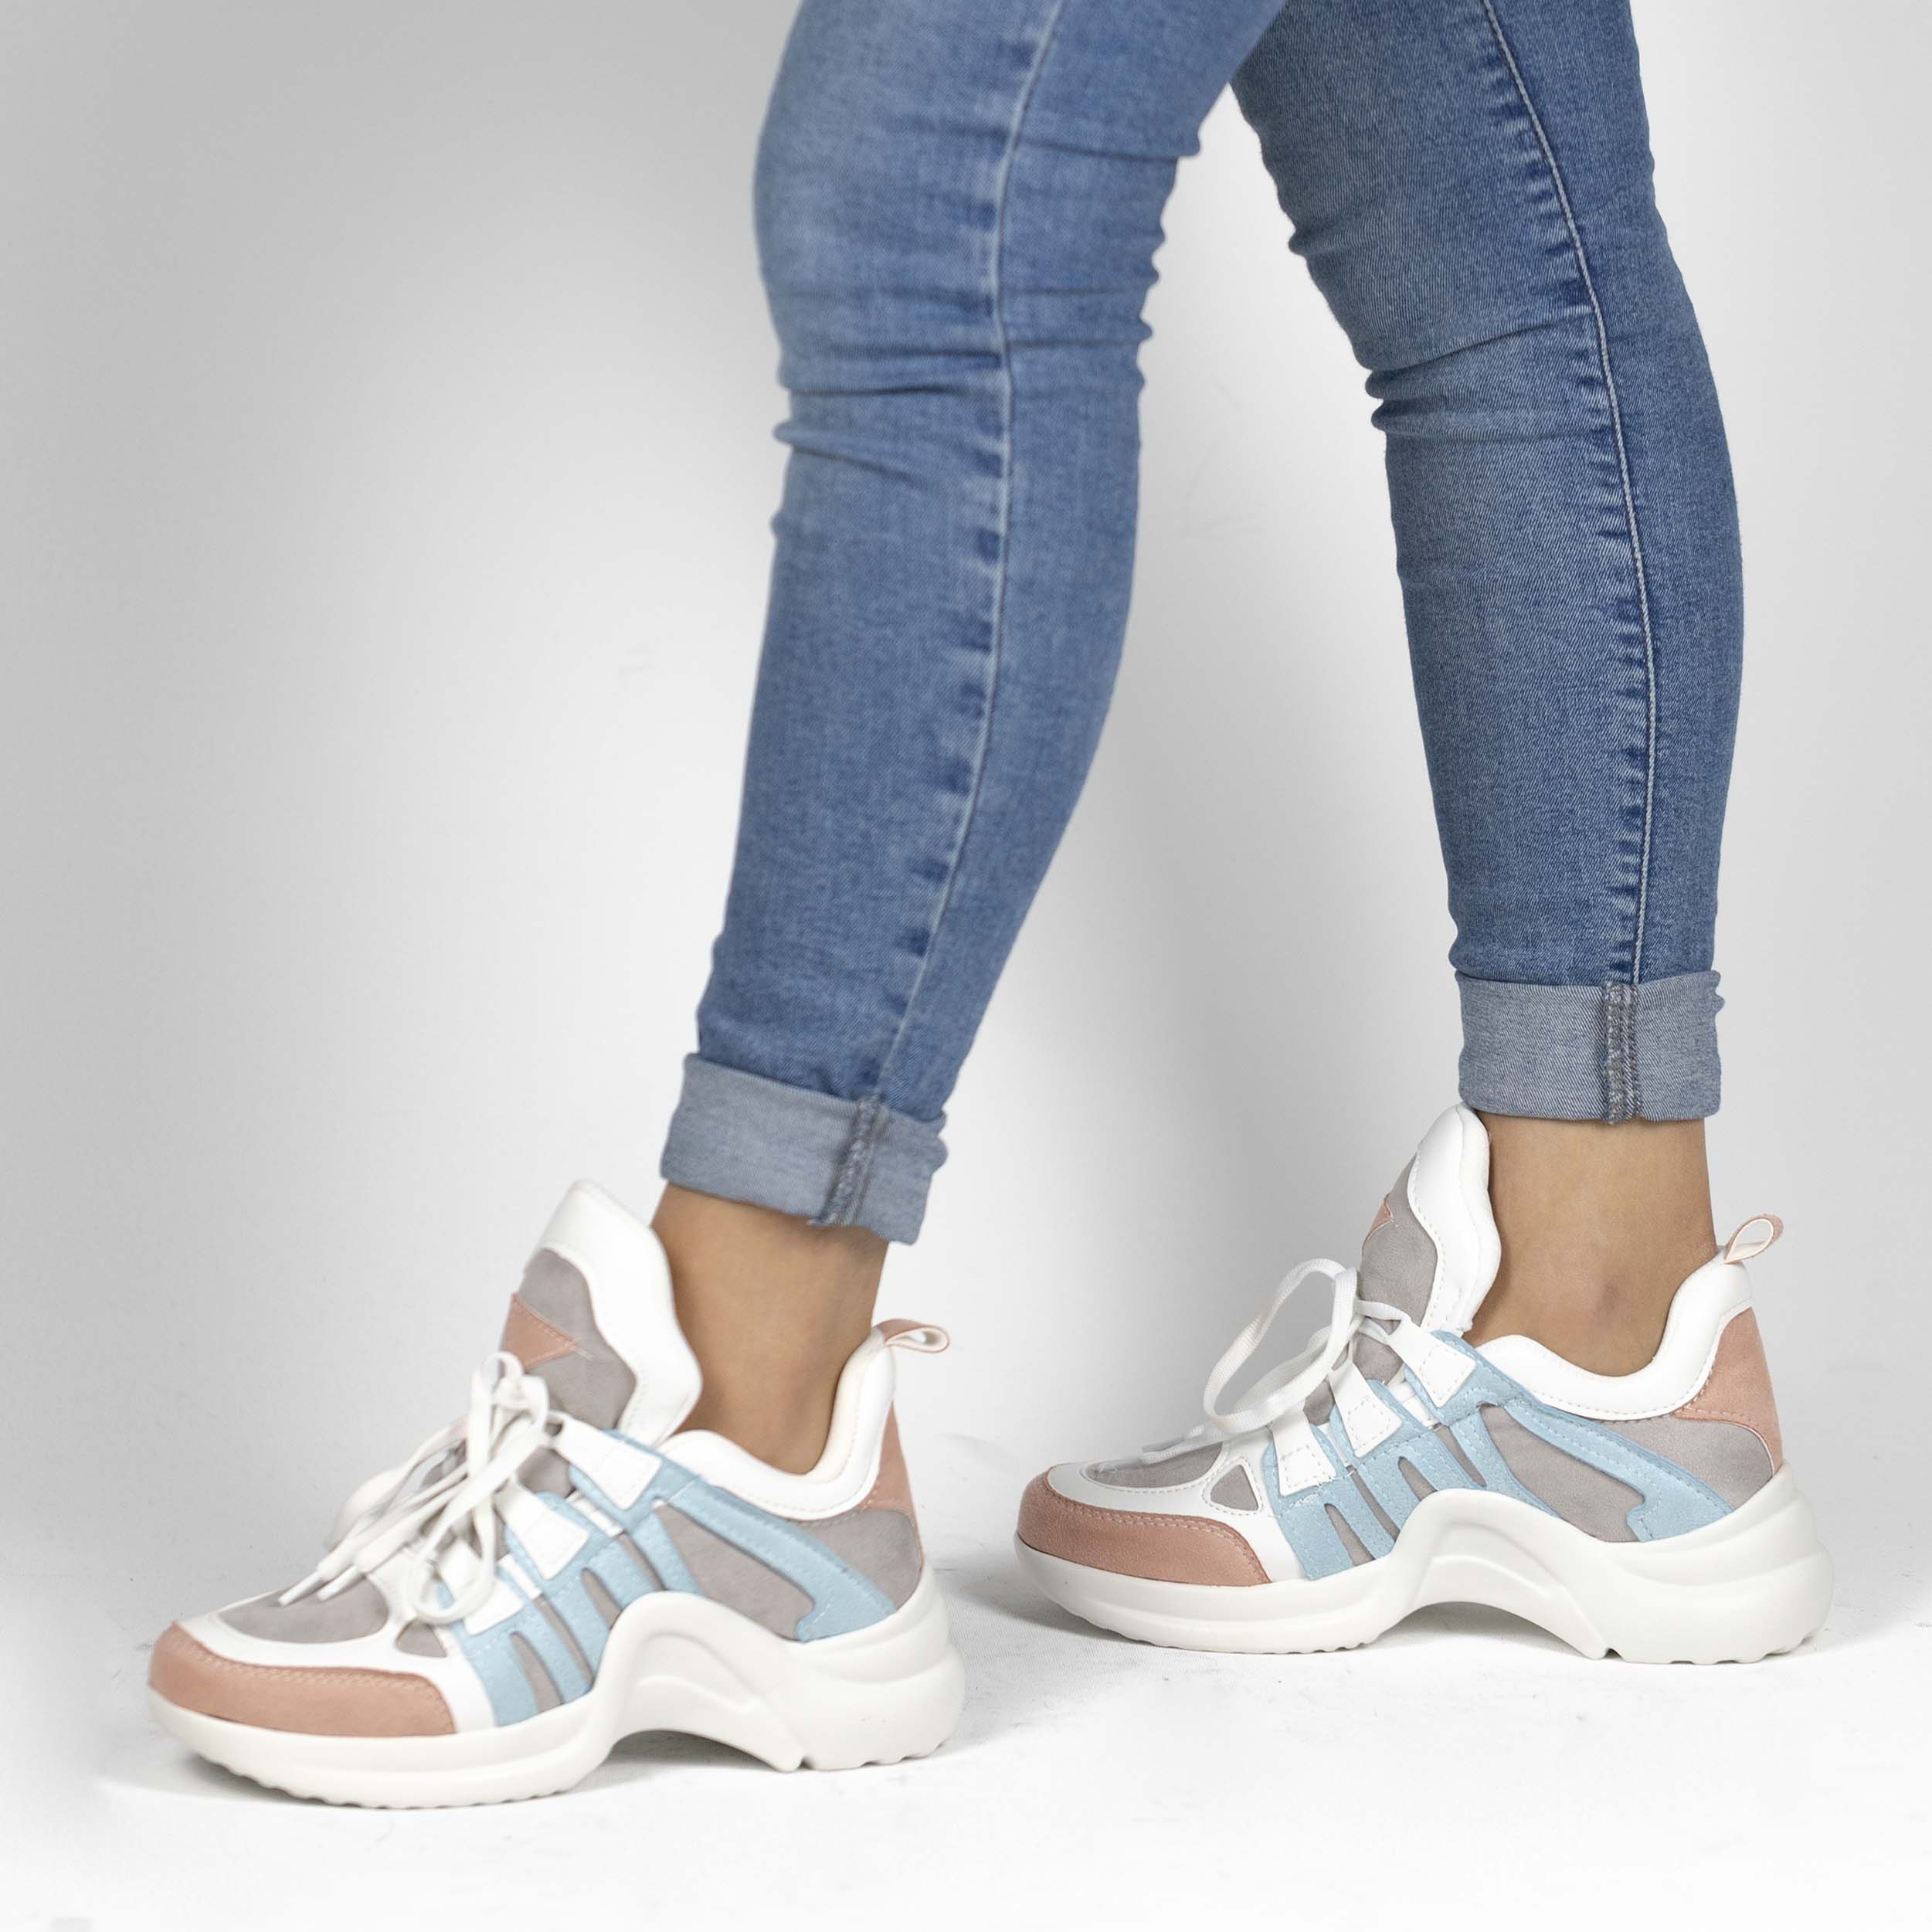 Kadın Kalın Tabanlı Spor Günlük Renkli Sneakers Ayakkabı, Renk: Beyaz - Mavi, Beden: 37